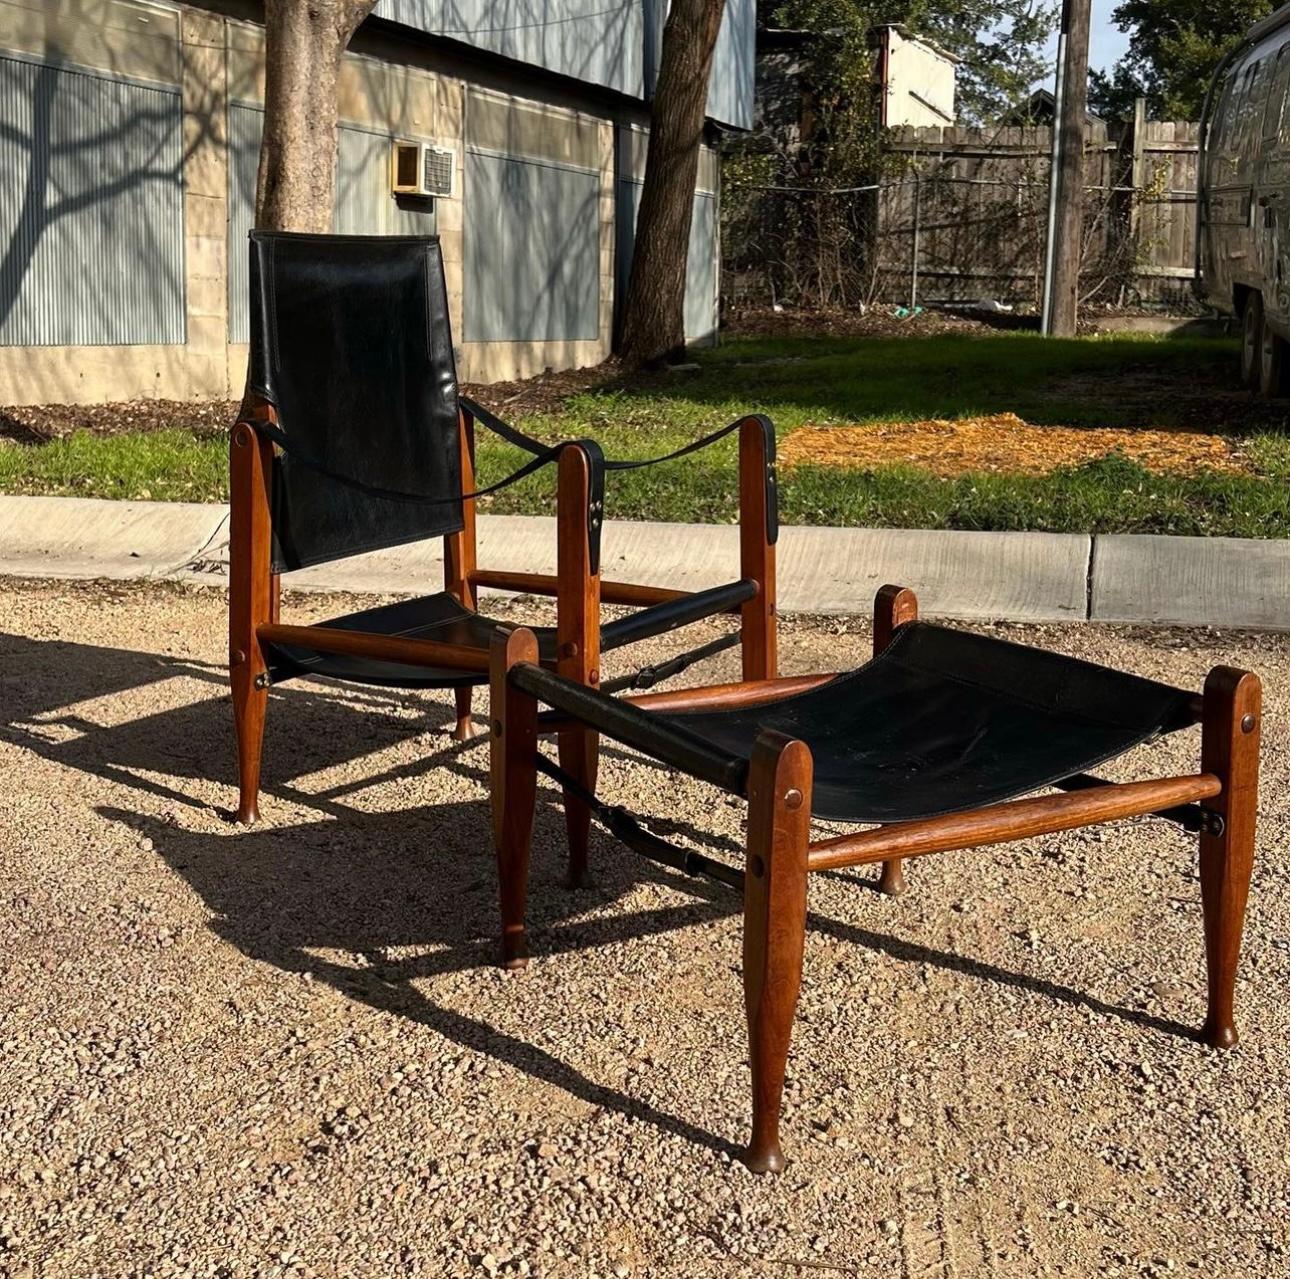 Chaise Safari iconique en cuir noir de Kaare Klint avec ottoman/pouf assorti. Le fauteuil s'incline bien et supporte le poids. Les courroies en cuir d'origine sont intactes et ne présentent qu'une patine minimale. 
